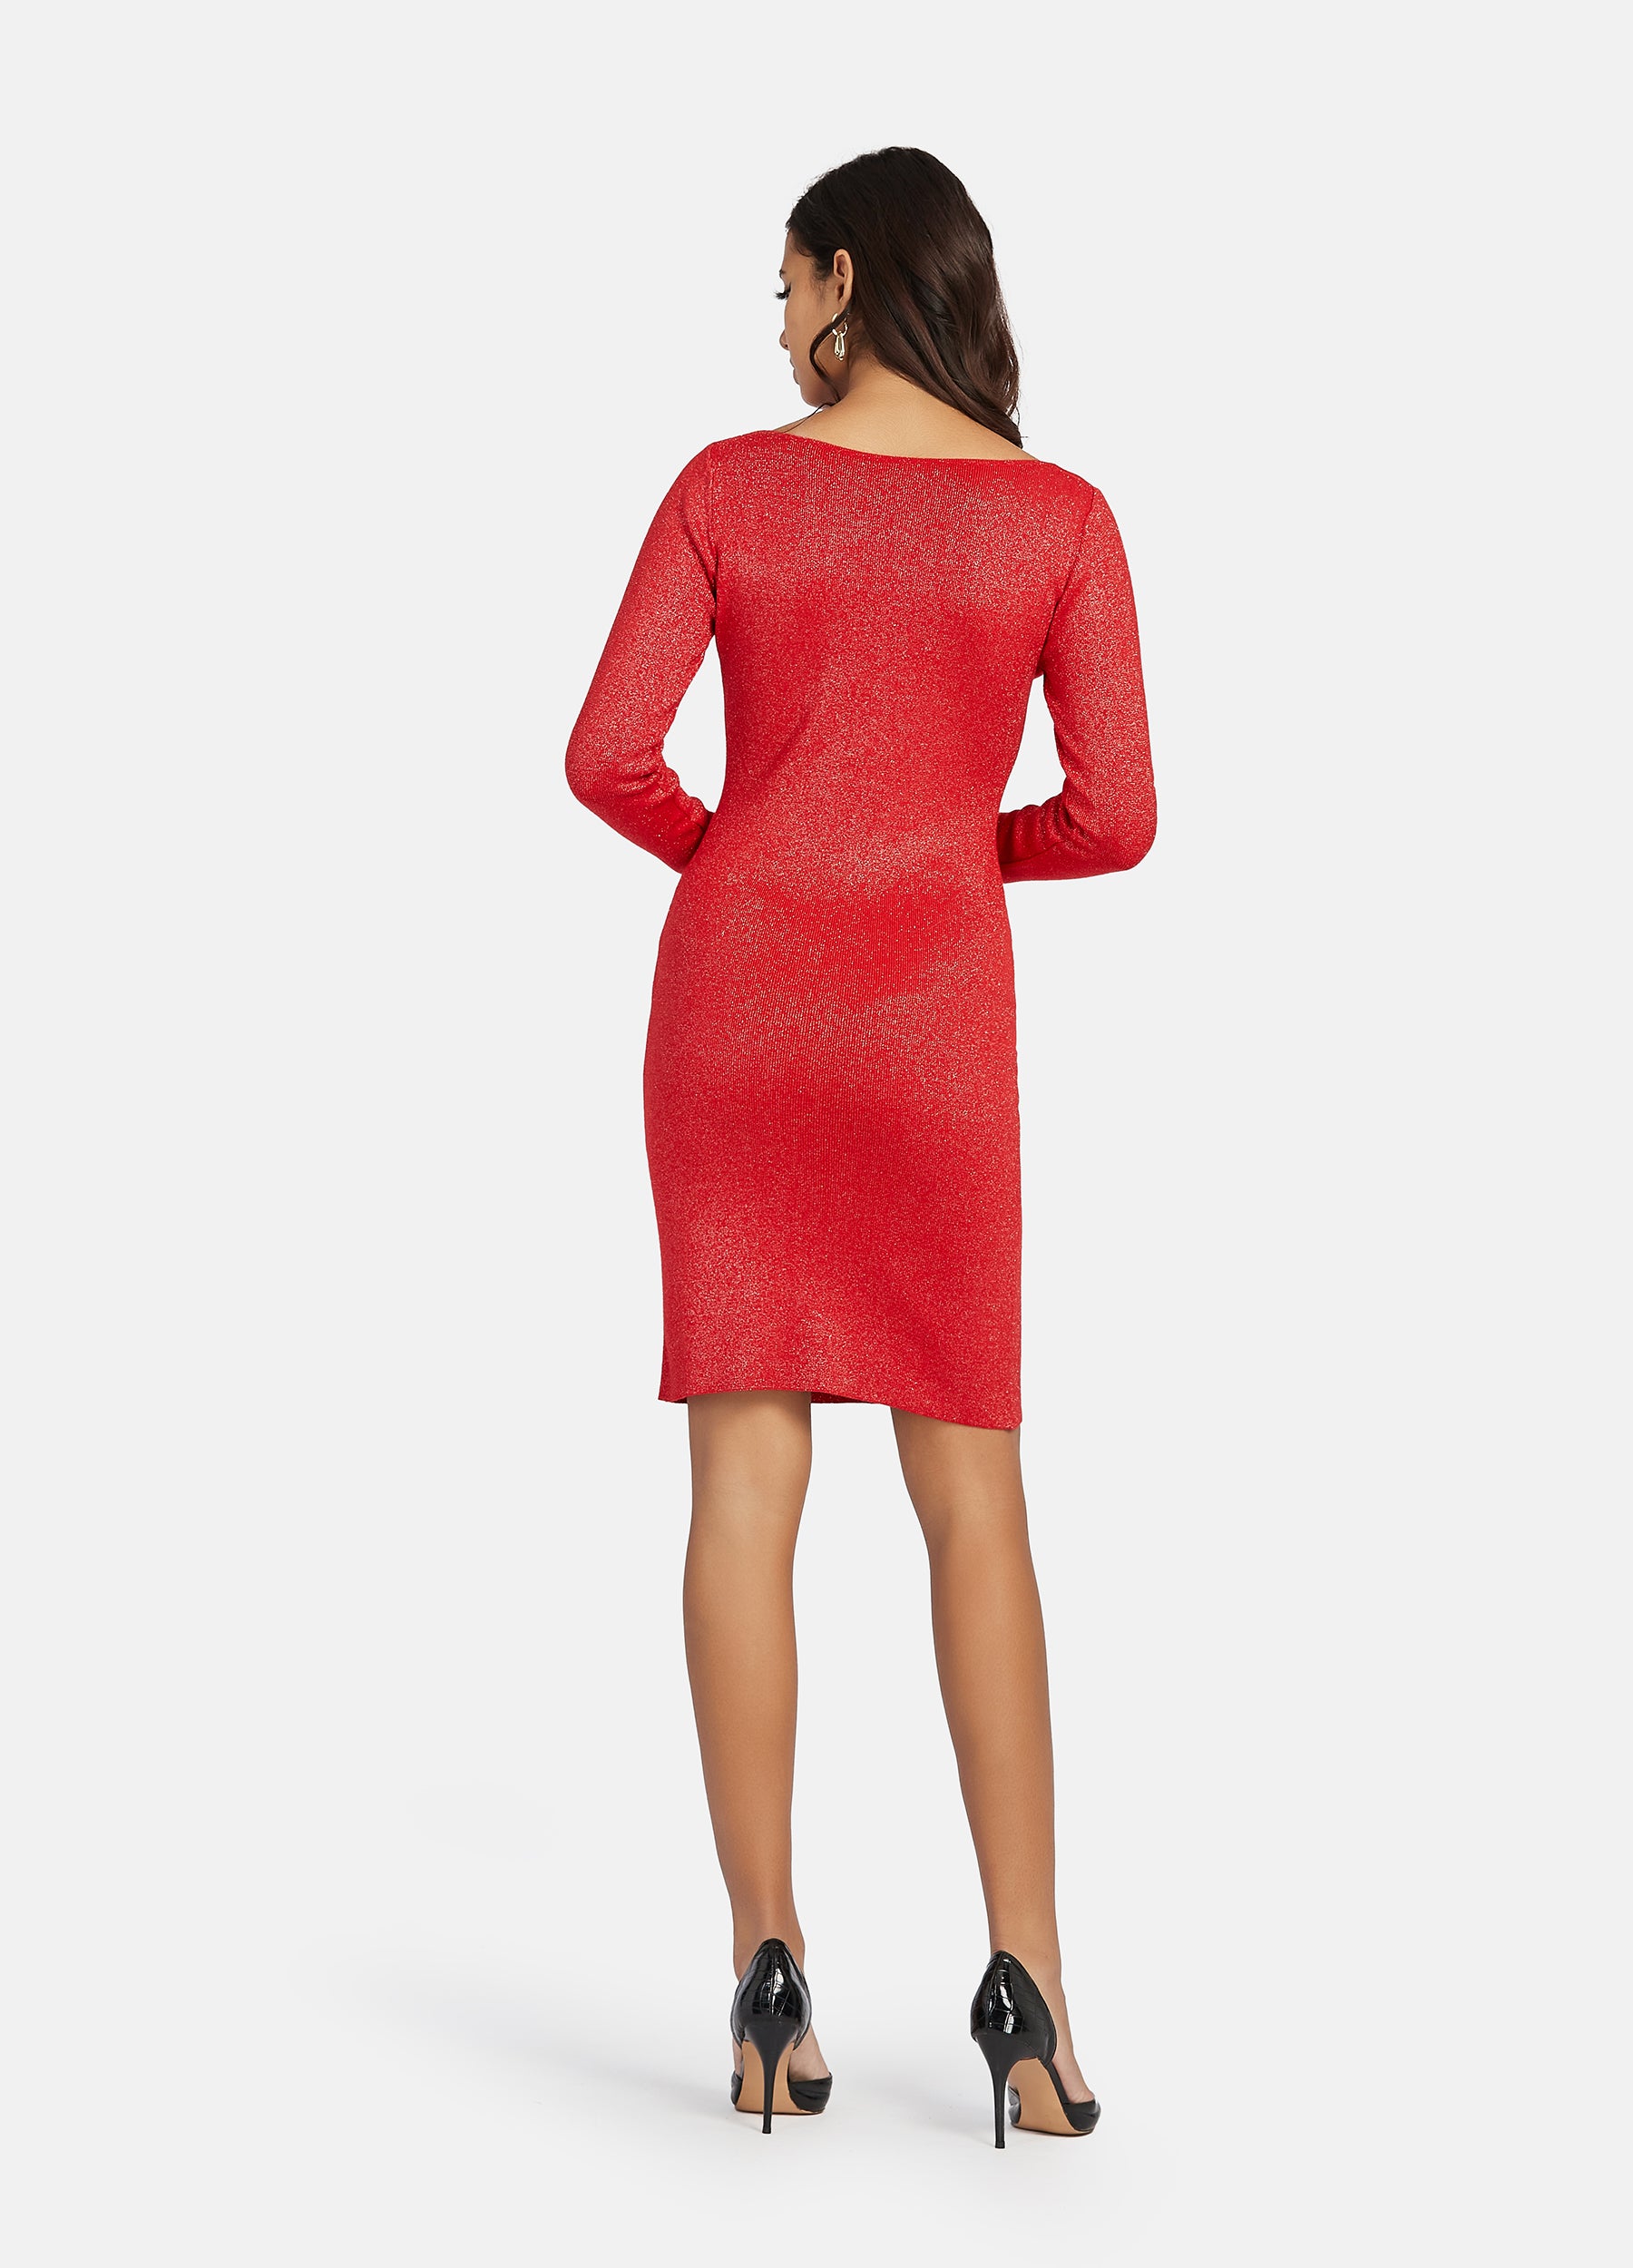 FINEPEEK Women's Fall Red Slim Fit Rib-Knit Sweater Dress  (Clearance)